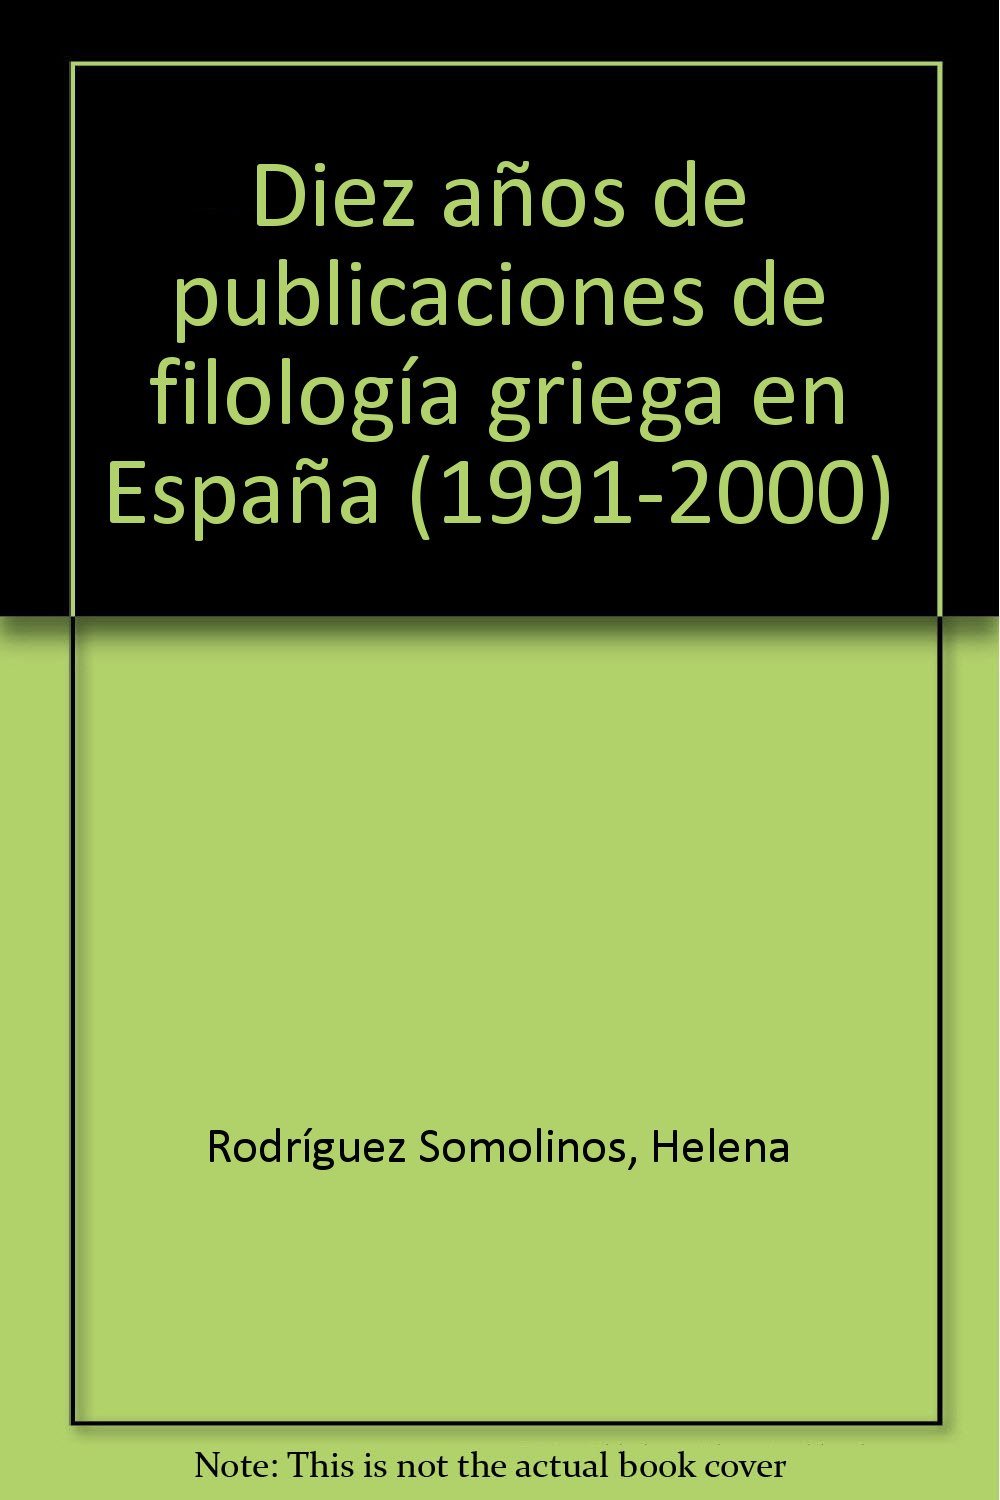 Diez años de publicaciones de filología griega en España